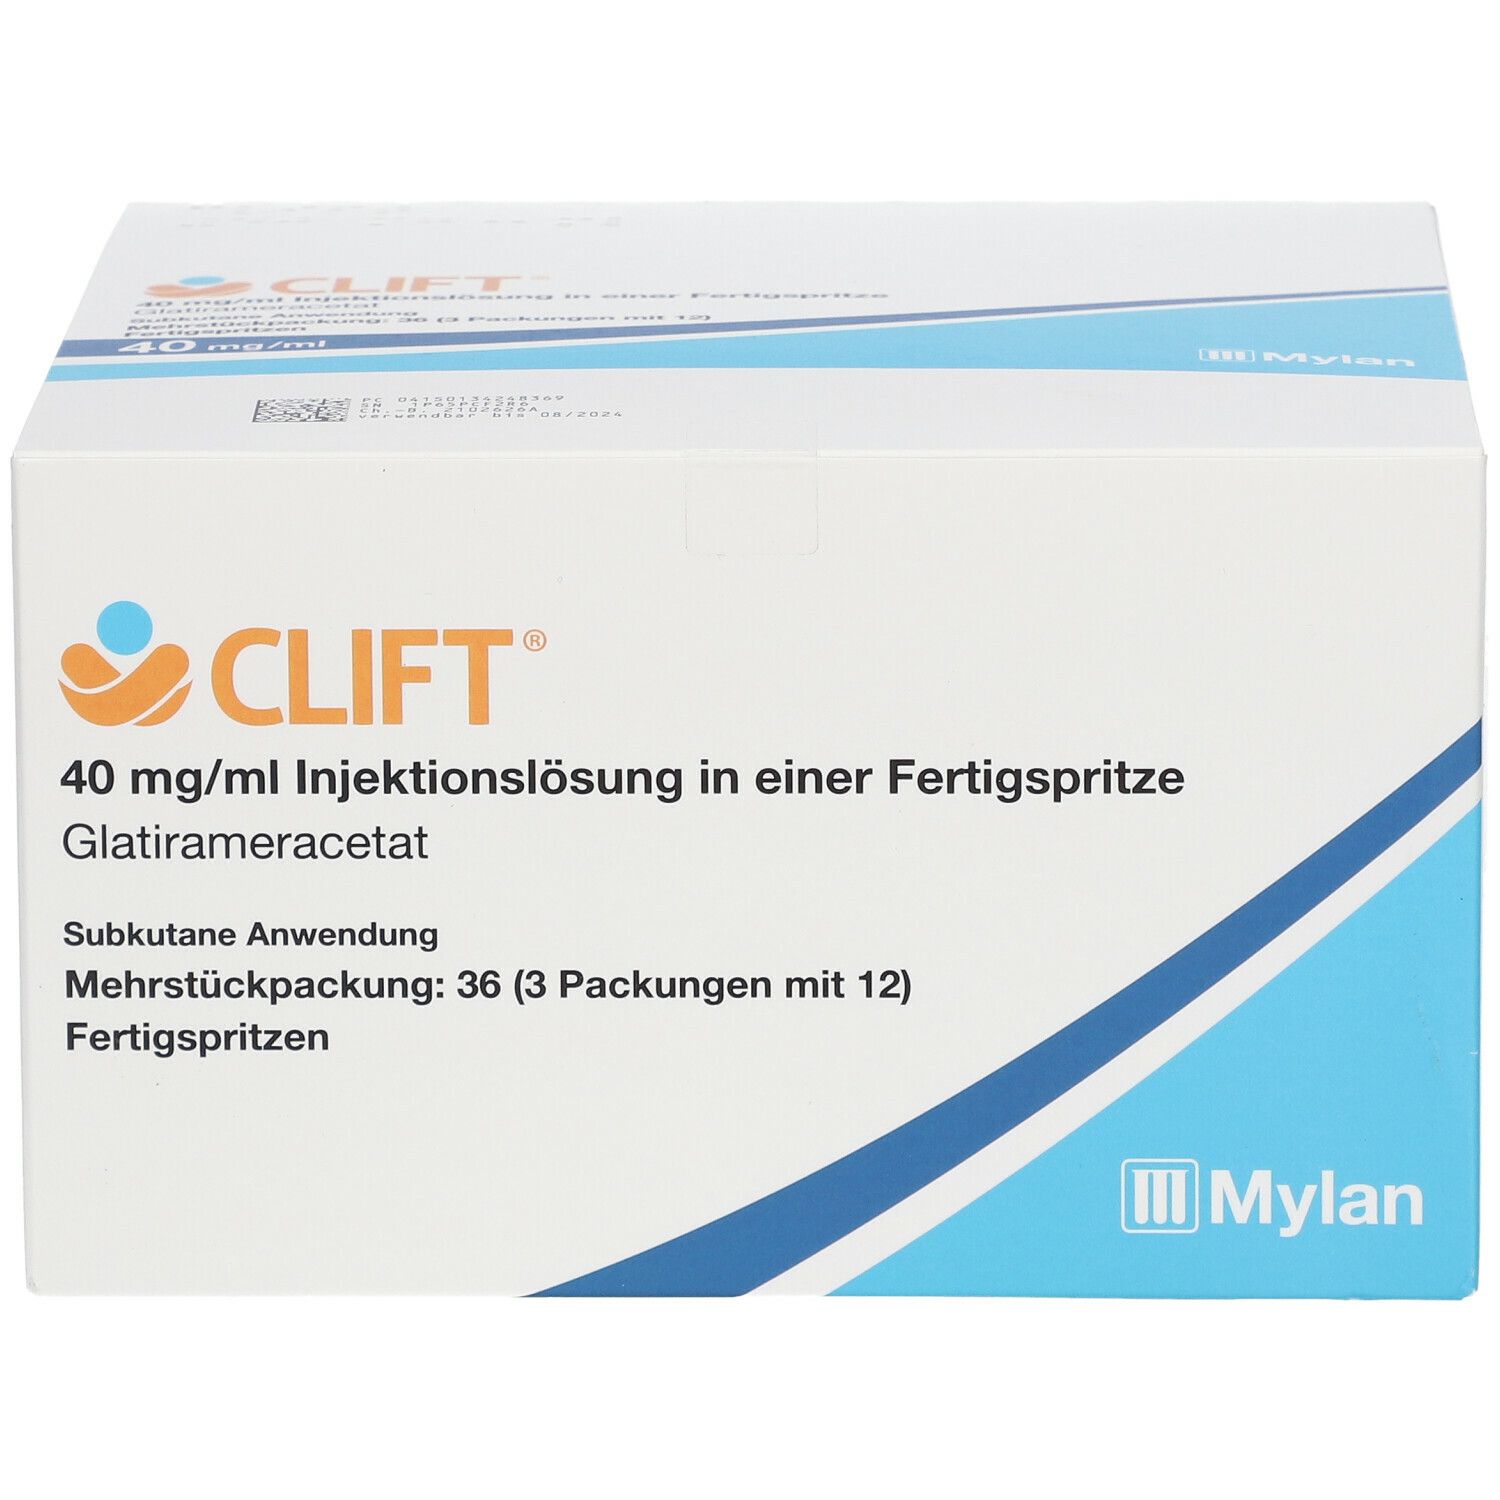 Clift 40 mg/ml